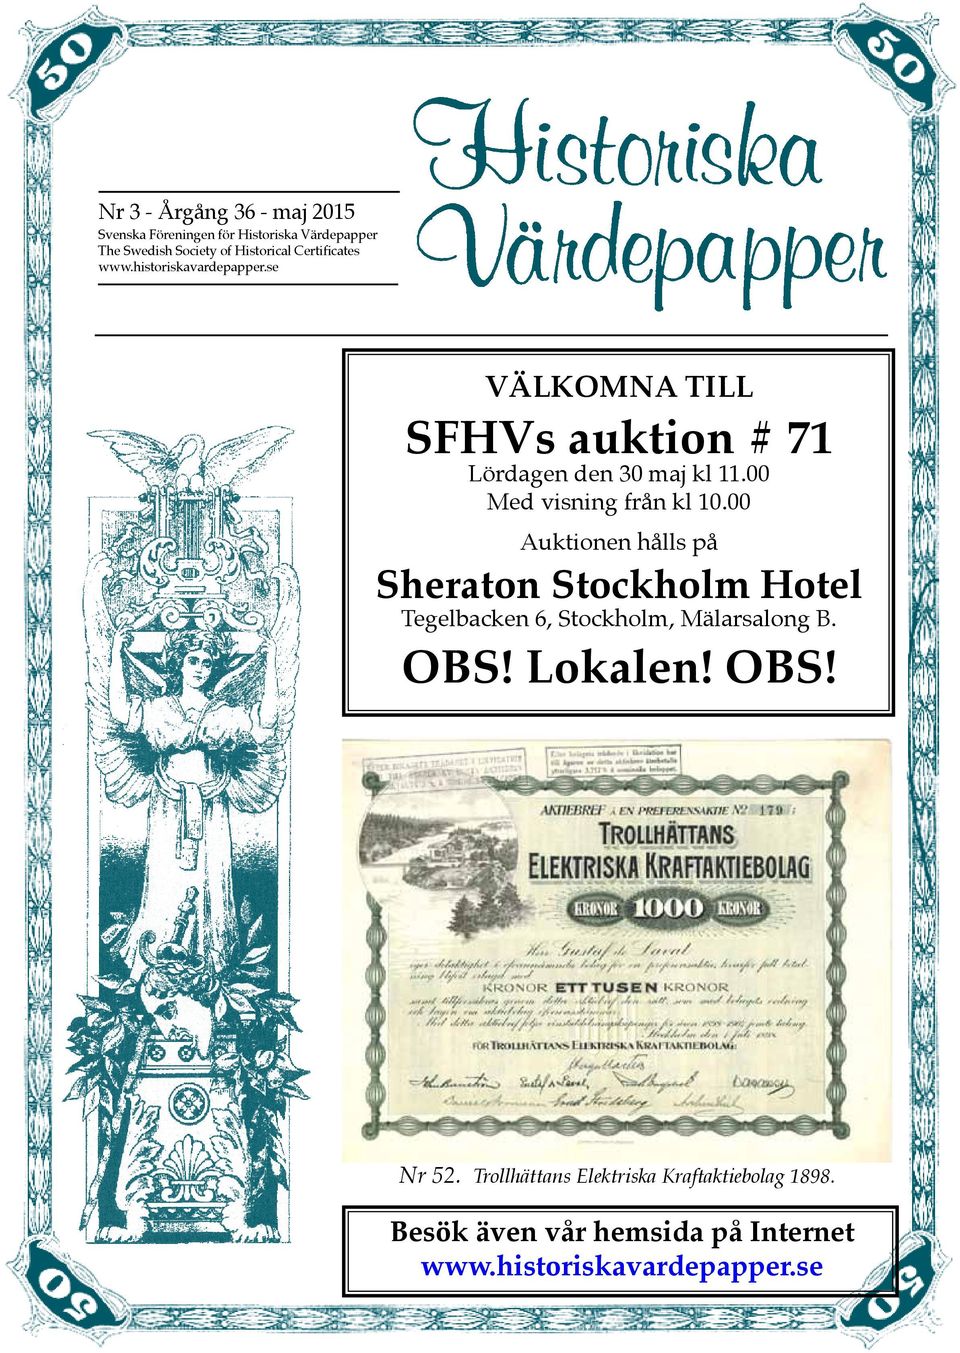 00 Med visning från kl 10.00 Auktionen hålls på Sheraton Stockholm Hotel Tegelbacken 6, Stockholm, Mälarsalong B.